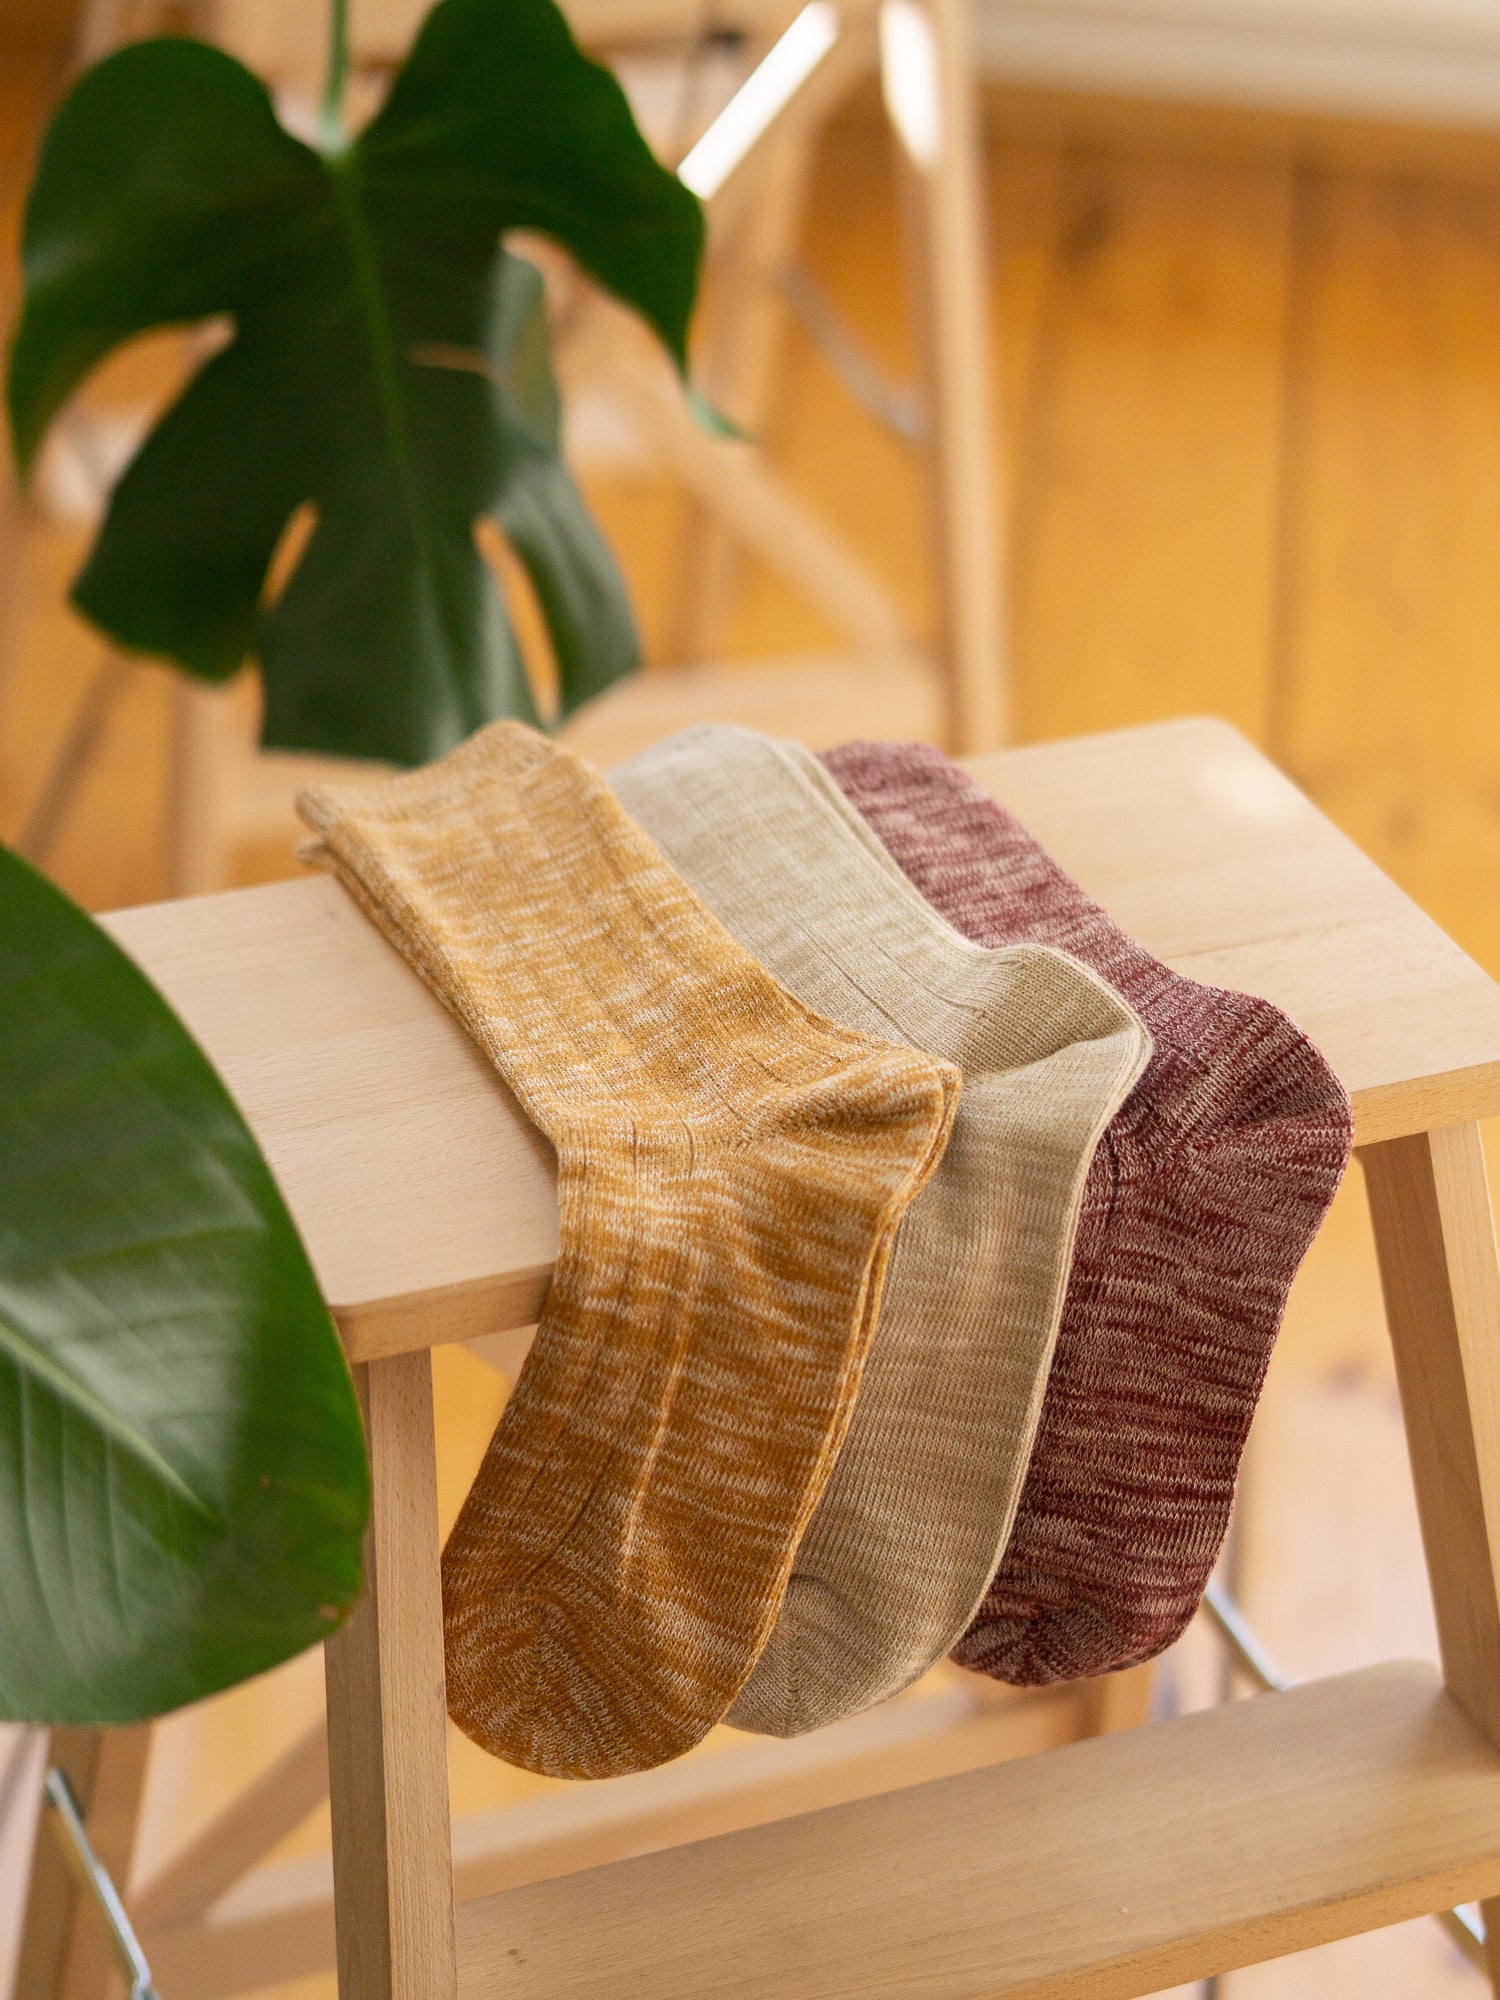 Unsere FUXBAU nachhaltigen Socken made in Portugal in senfgelb, biege und bordeaux meliert